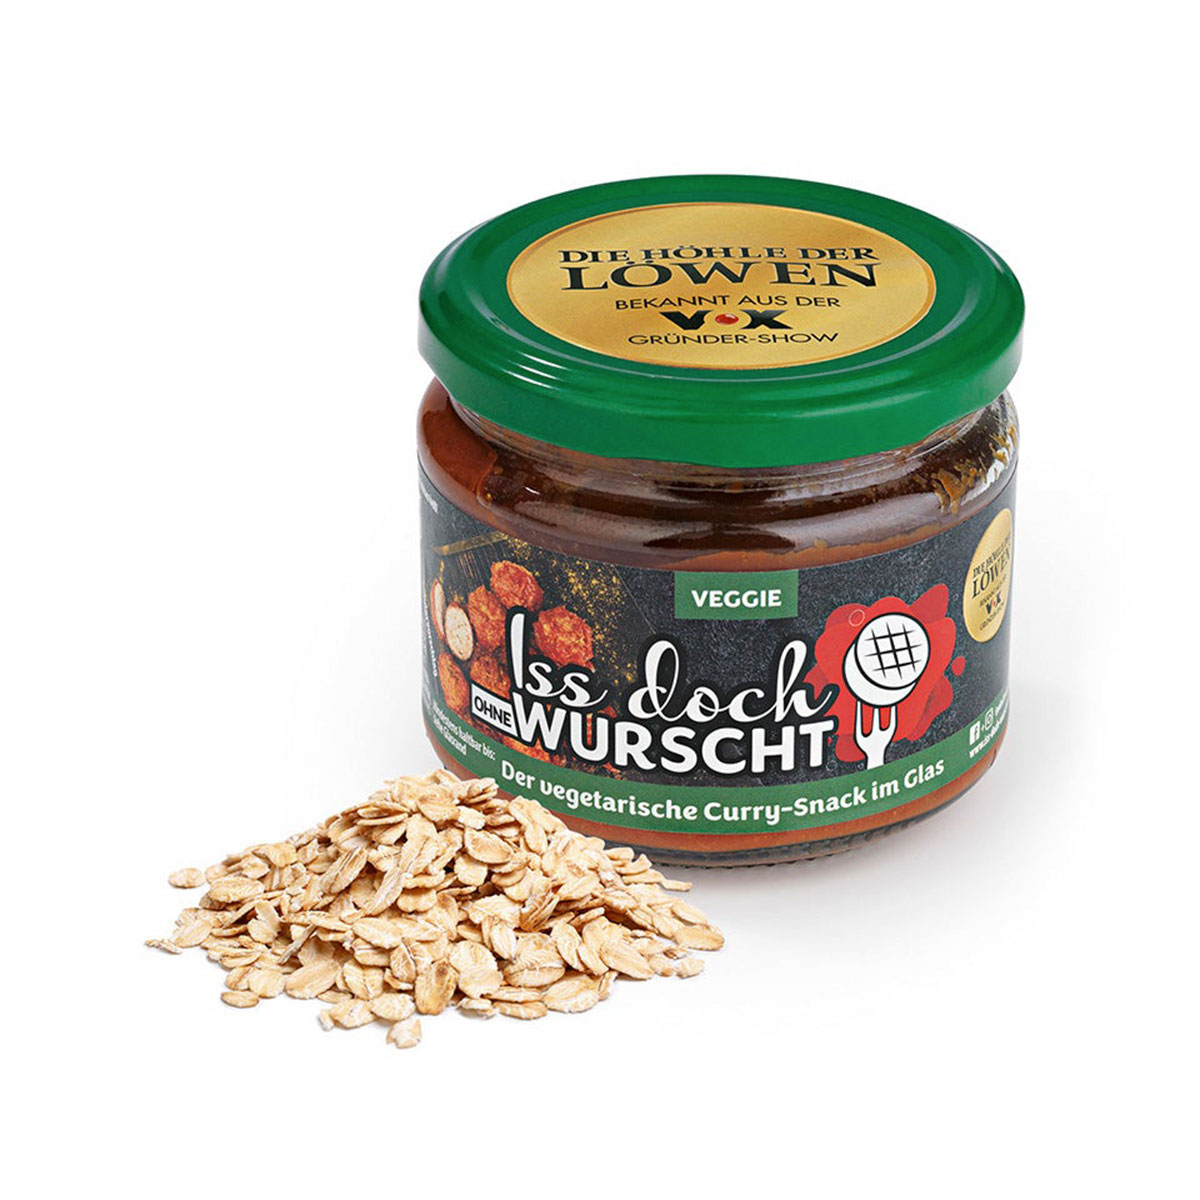 Currywurst-Snack Veggie - Iss Doch Wurscht, 250g